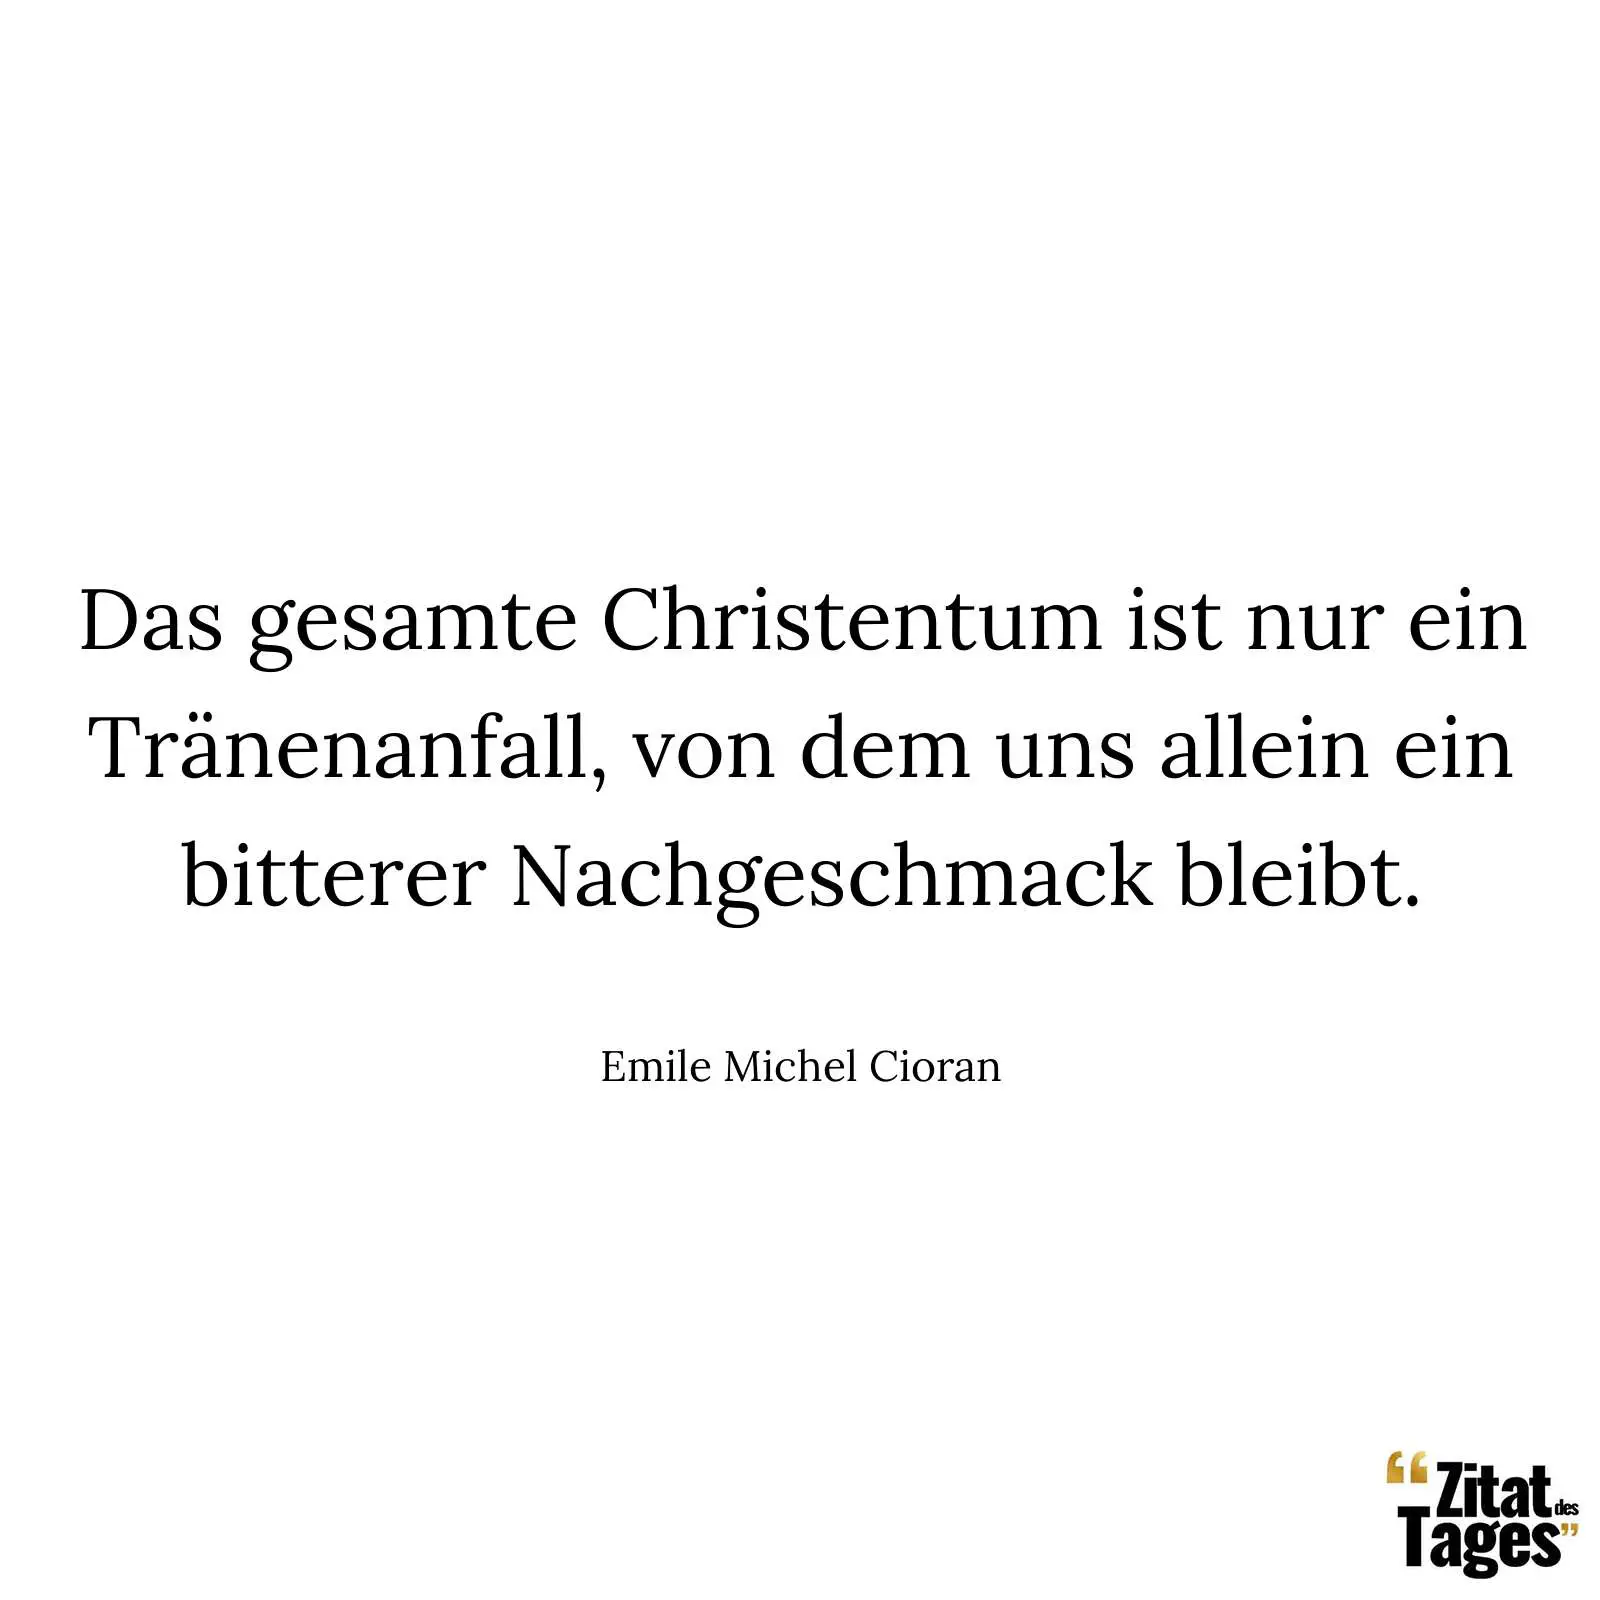 Das gesamte Christentum ist nur ein Tränenanfall, von dem uns allein ein bitterer Nachgeschmack bleibt. - Emile Michel Cioran